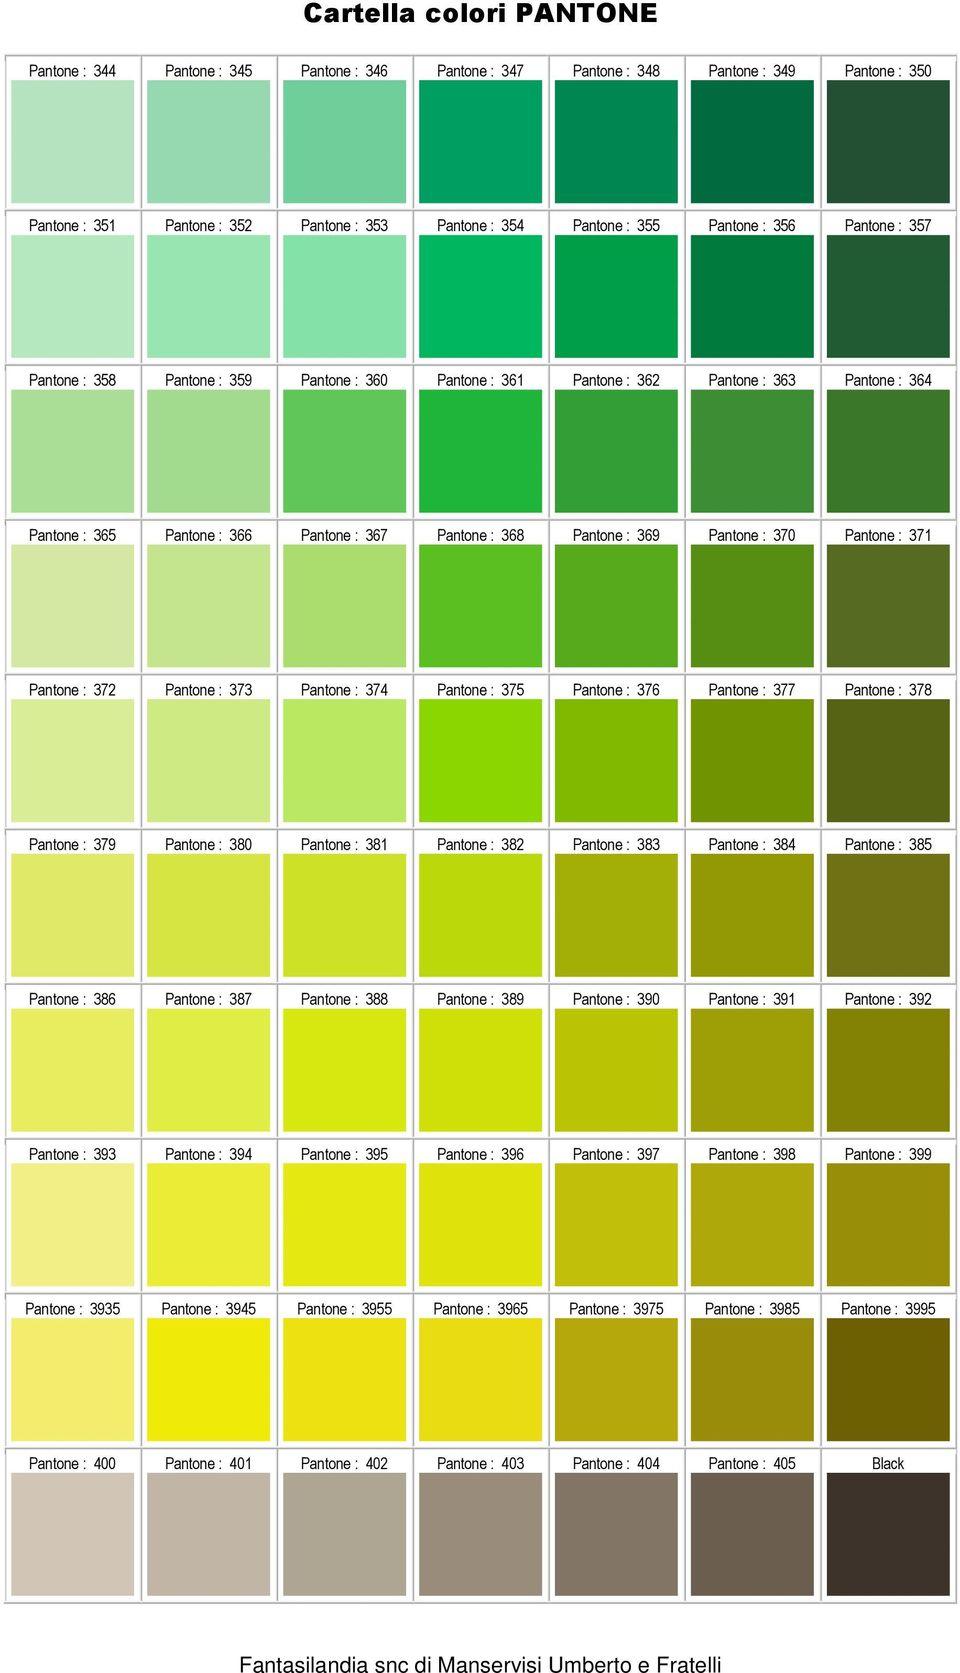 Pantone 390 Green and Grey Logo - Cartella colori PANTONE - PDF